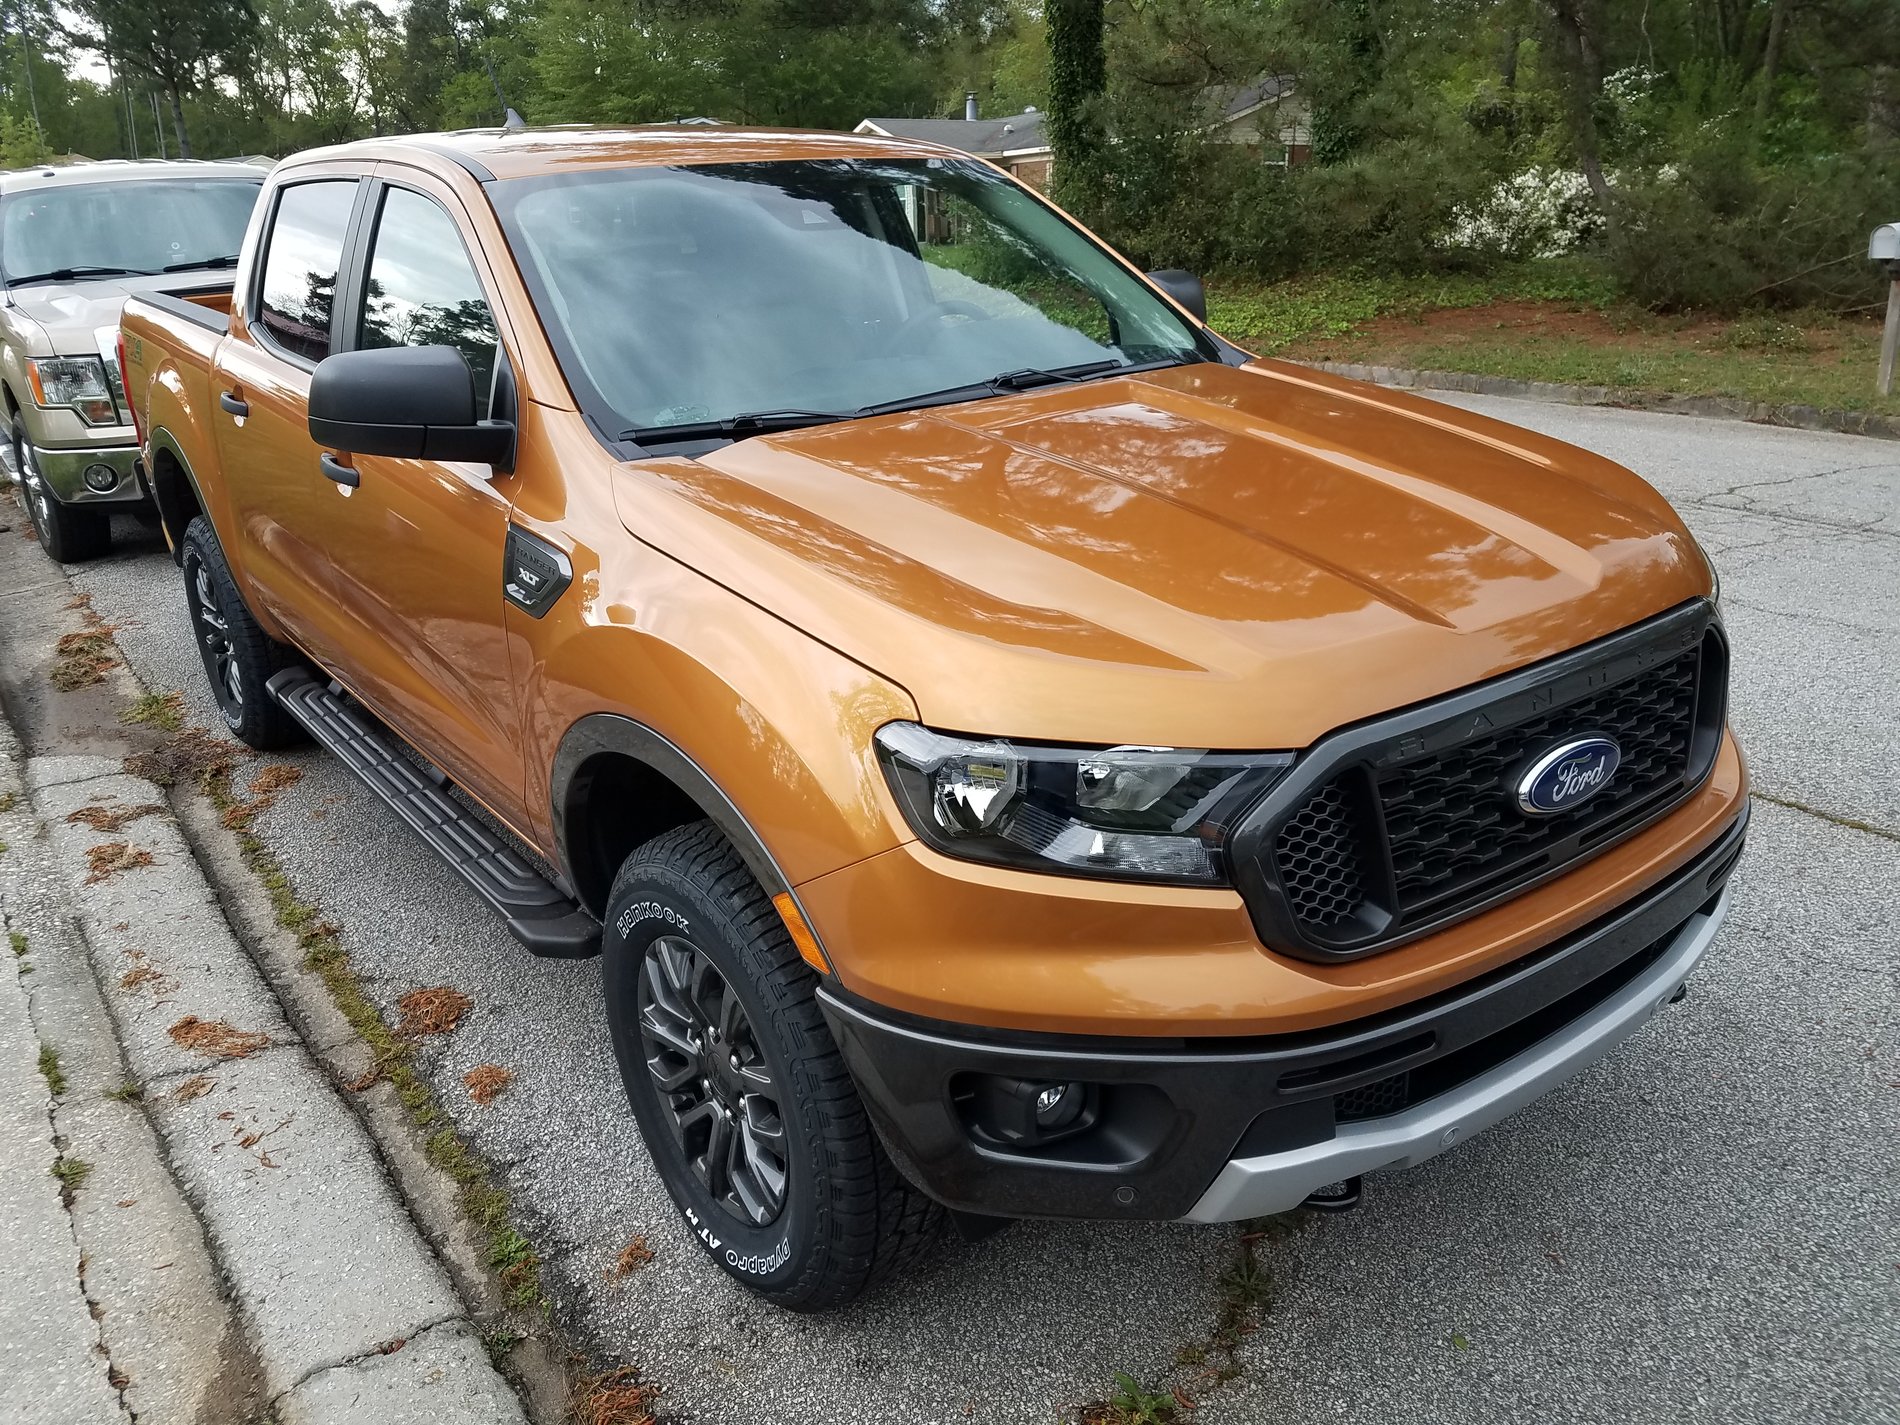 Ford Ranger Pics of the new Ranger 20190409_180757